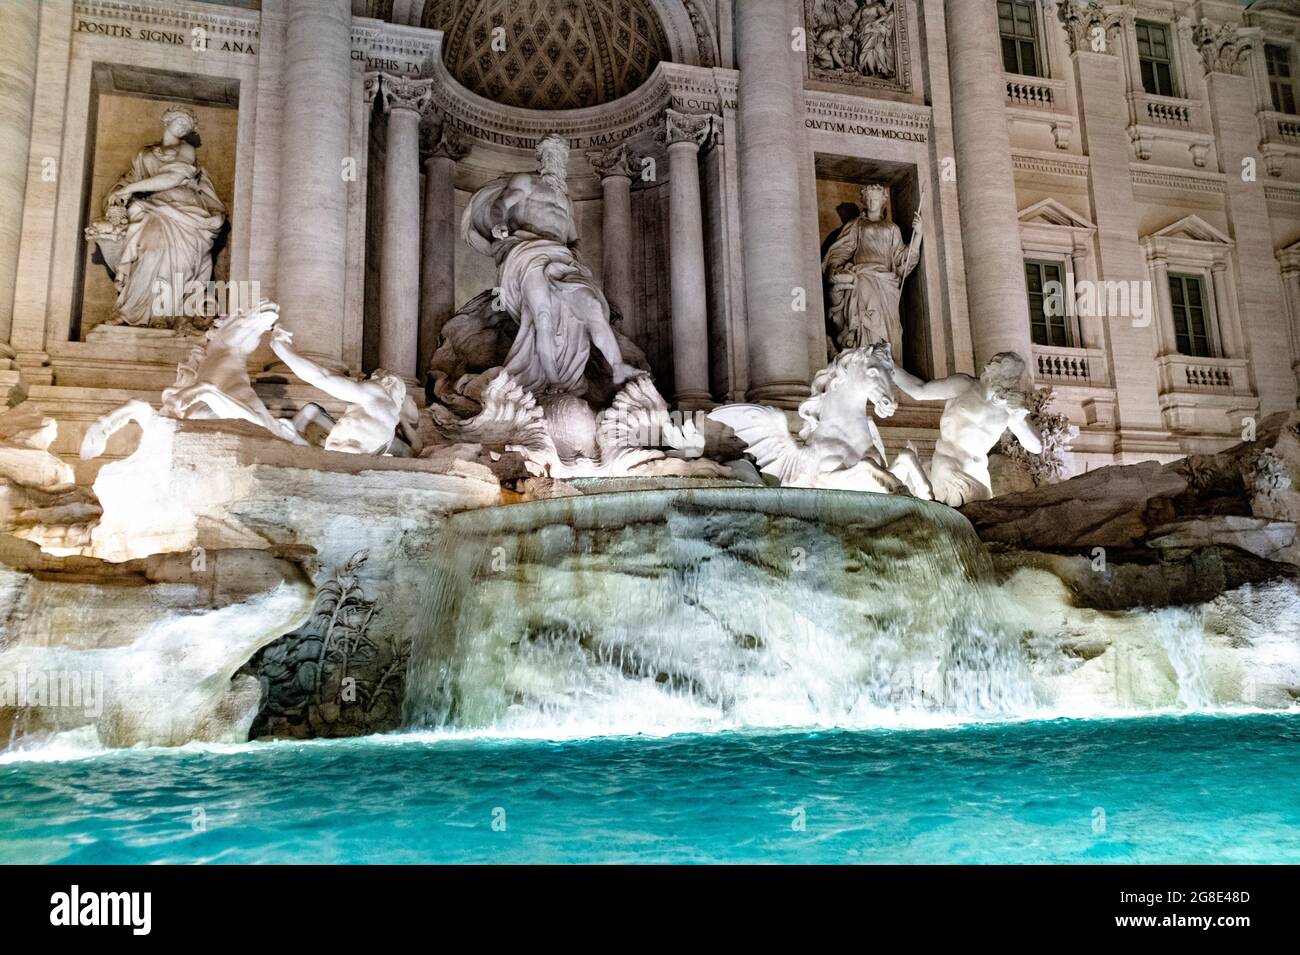 Europe - Italie, capitale Rome: Une vue détaillée de la fontaine de Trevi qui est l'un des endroits les plus populaires de Rome, des milliers de personnes visitent le f Banque D'Images